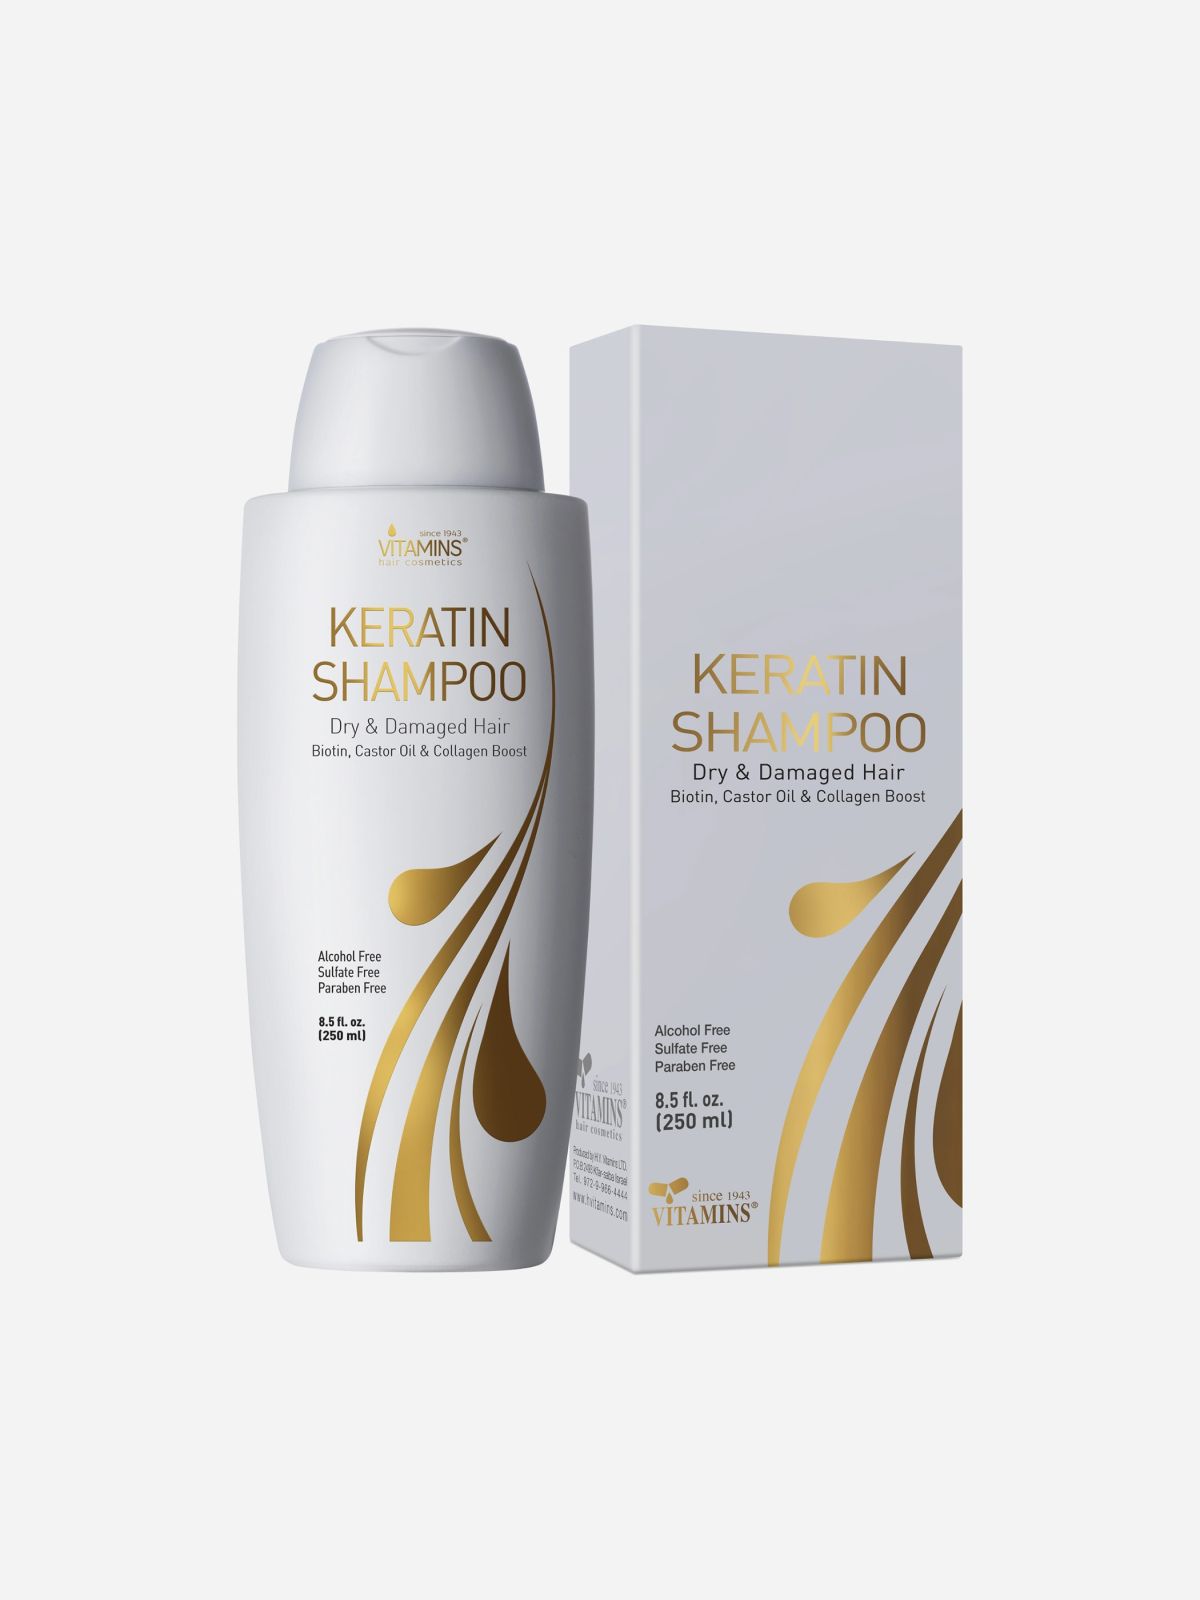  שמפו קרטין ביוטין וקולגן -  Keratin Biotin& Collagen Shampoo של VITAMINS